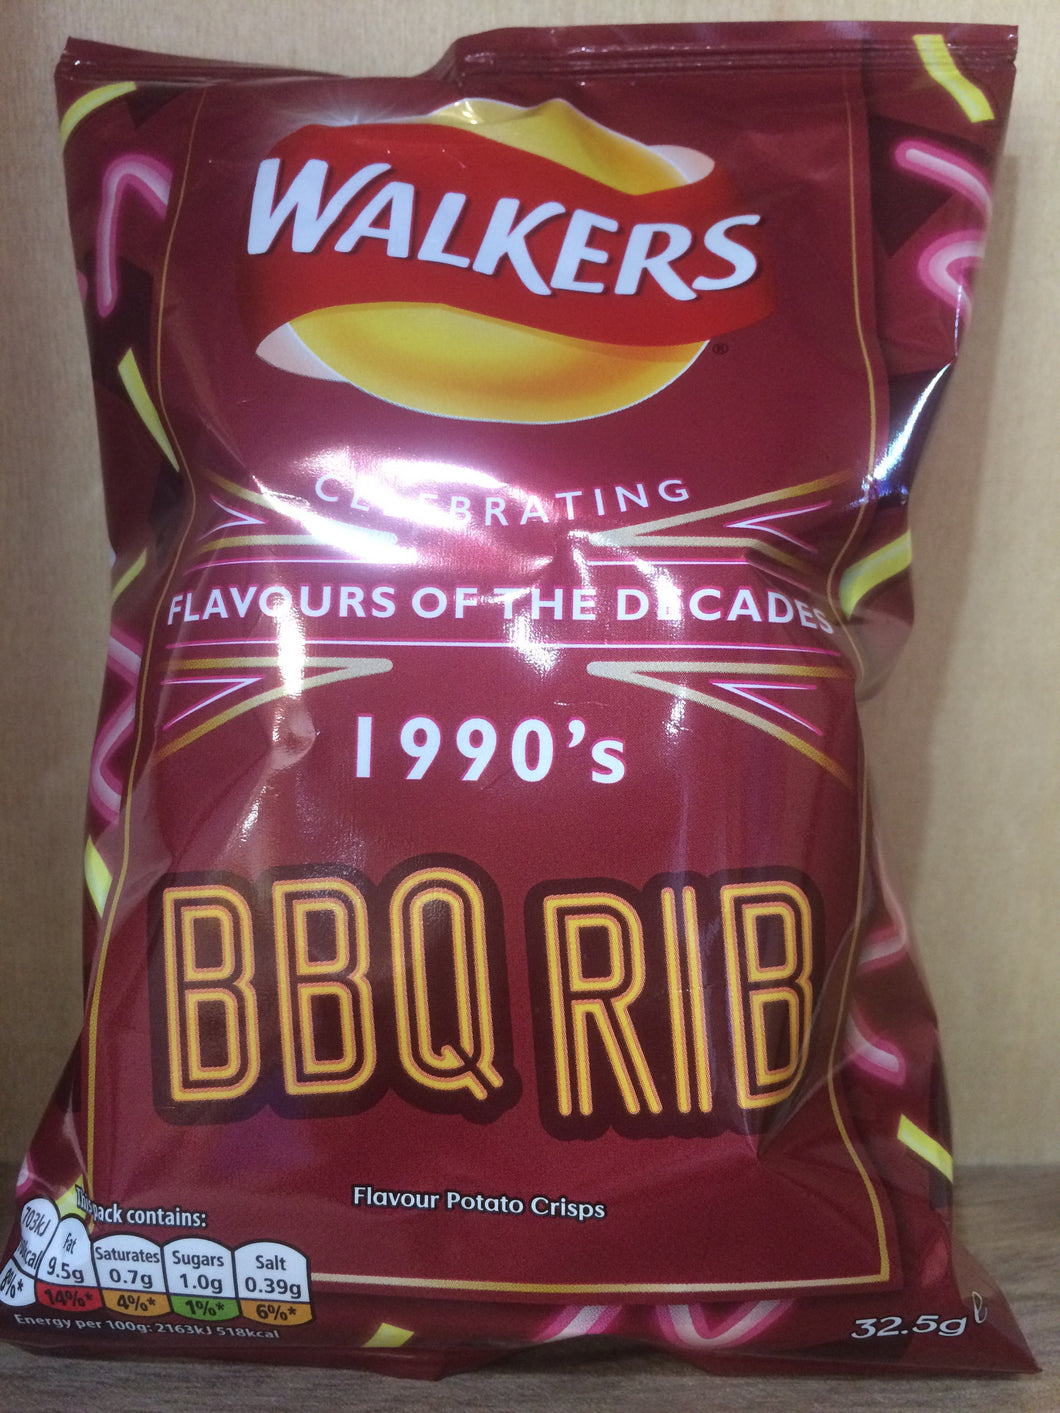 Walkers BBQ Rib Crisps 32.5g